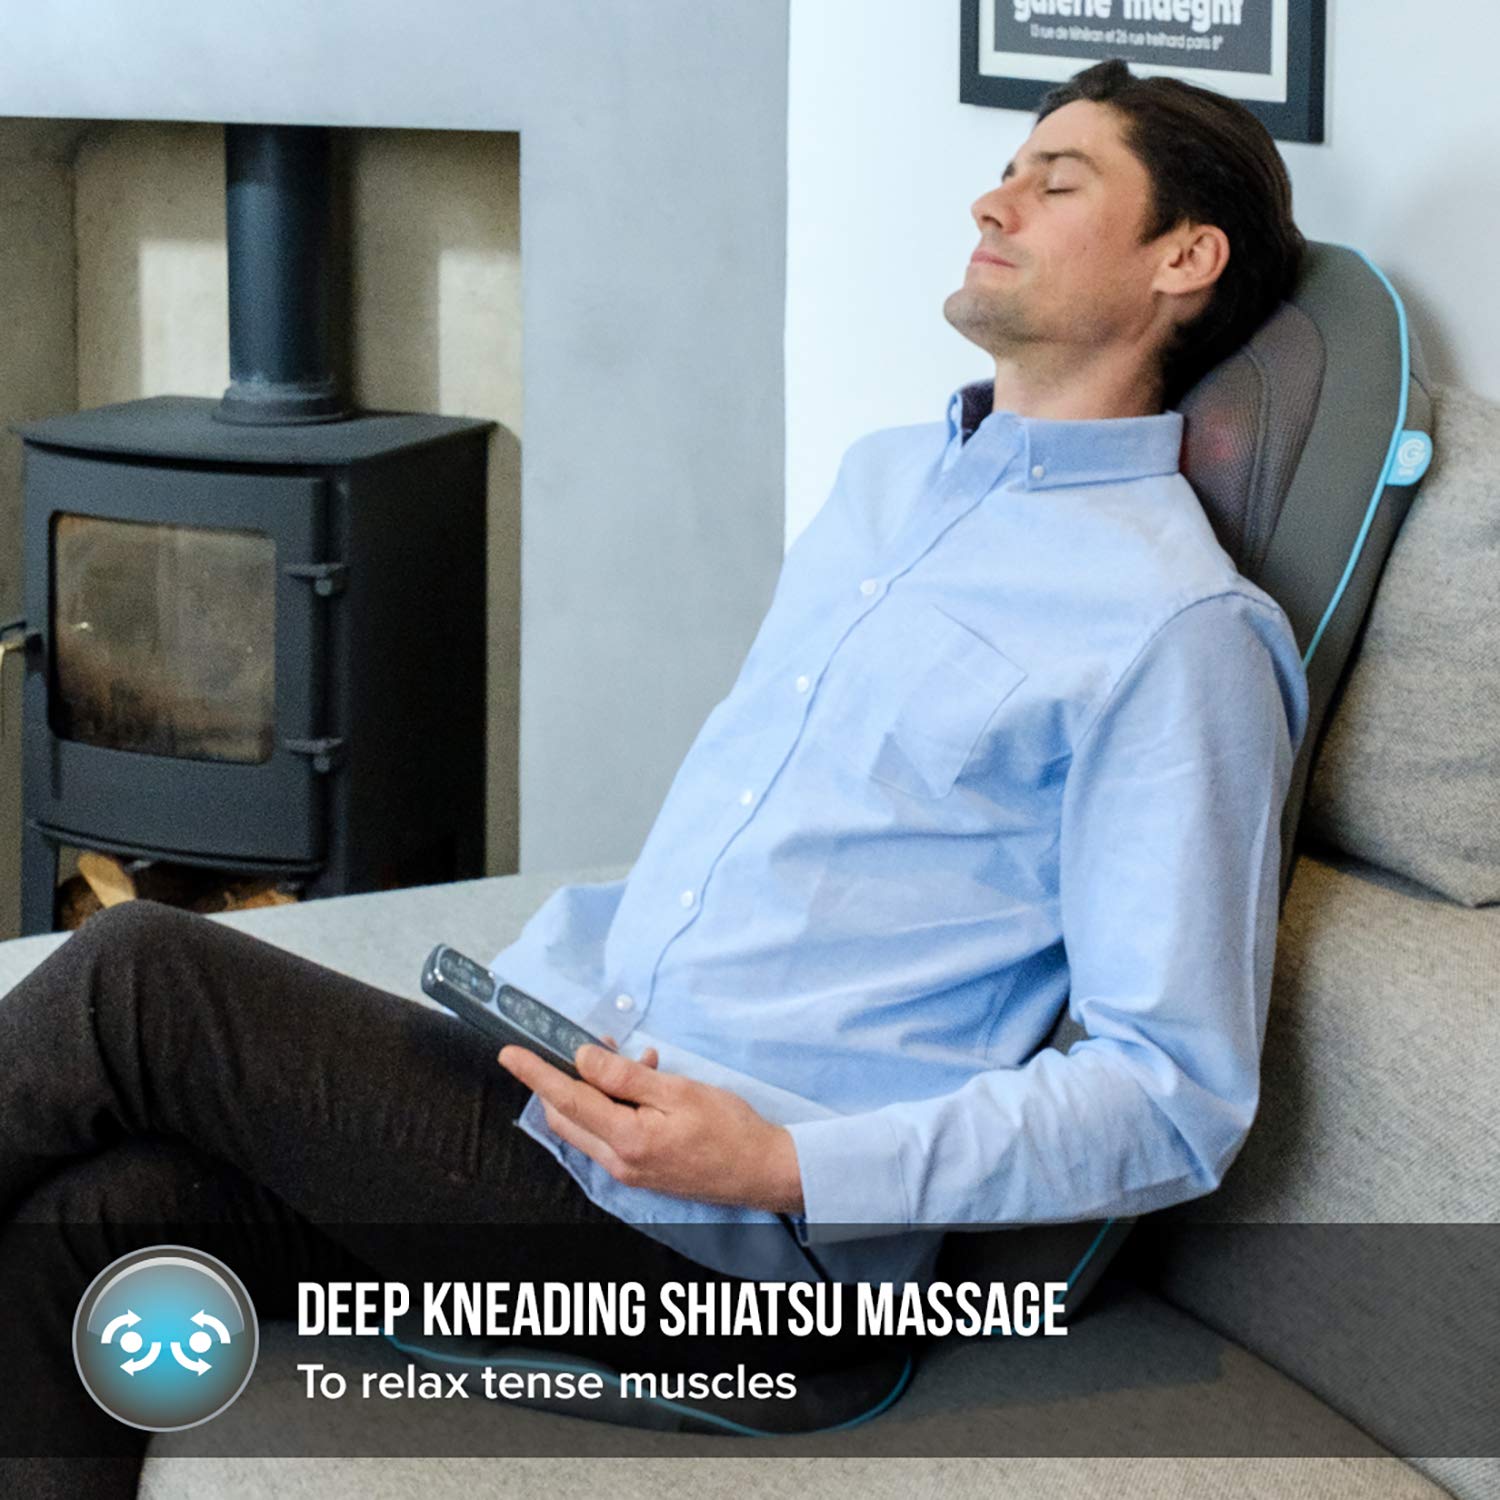 Đệm ghế massage USA  công nghệ Shiatsu GEL 3D chuyên nghiệp HoMedics SGM-1600 nhập khẩu USA